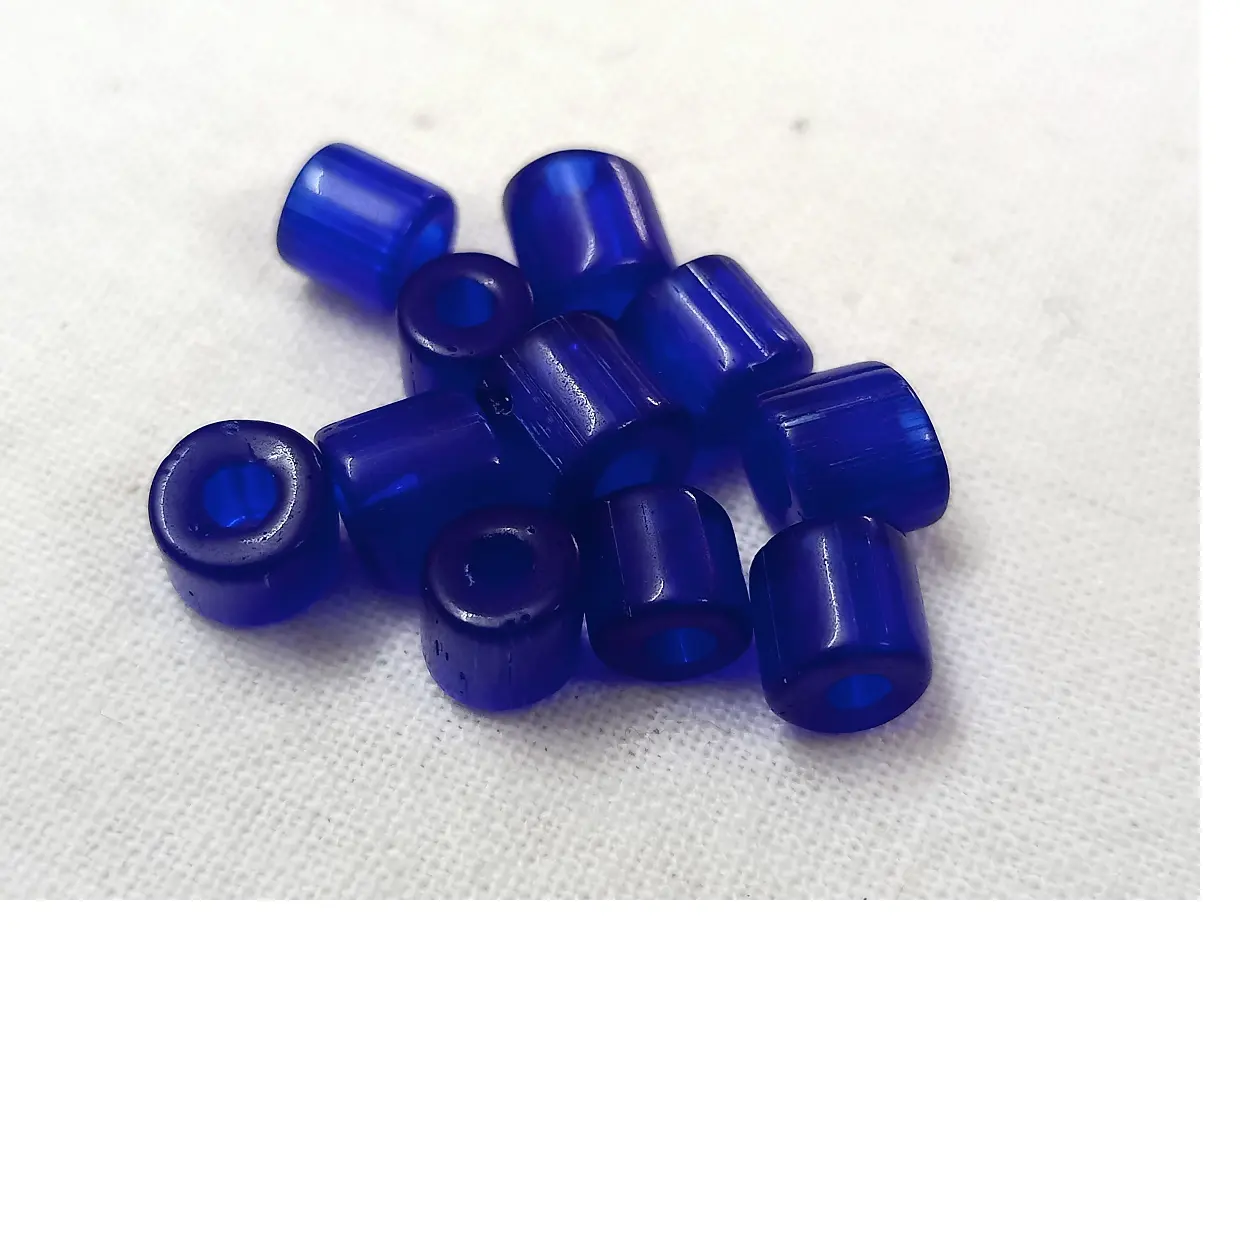 Cuentas de cristal en forma de mini tubo hechas a medida, en colores azul real rico, adecuado para Tiendas de Cuentas y diseñadores de joyería